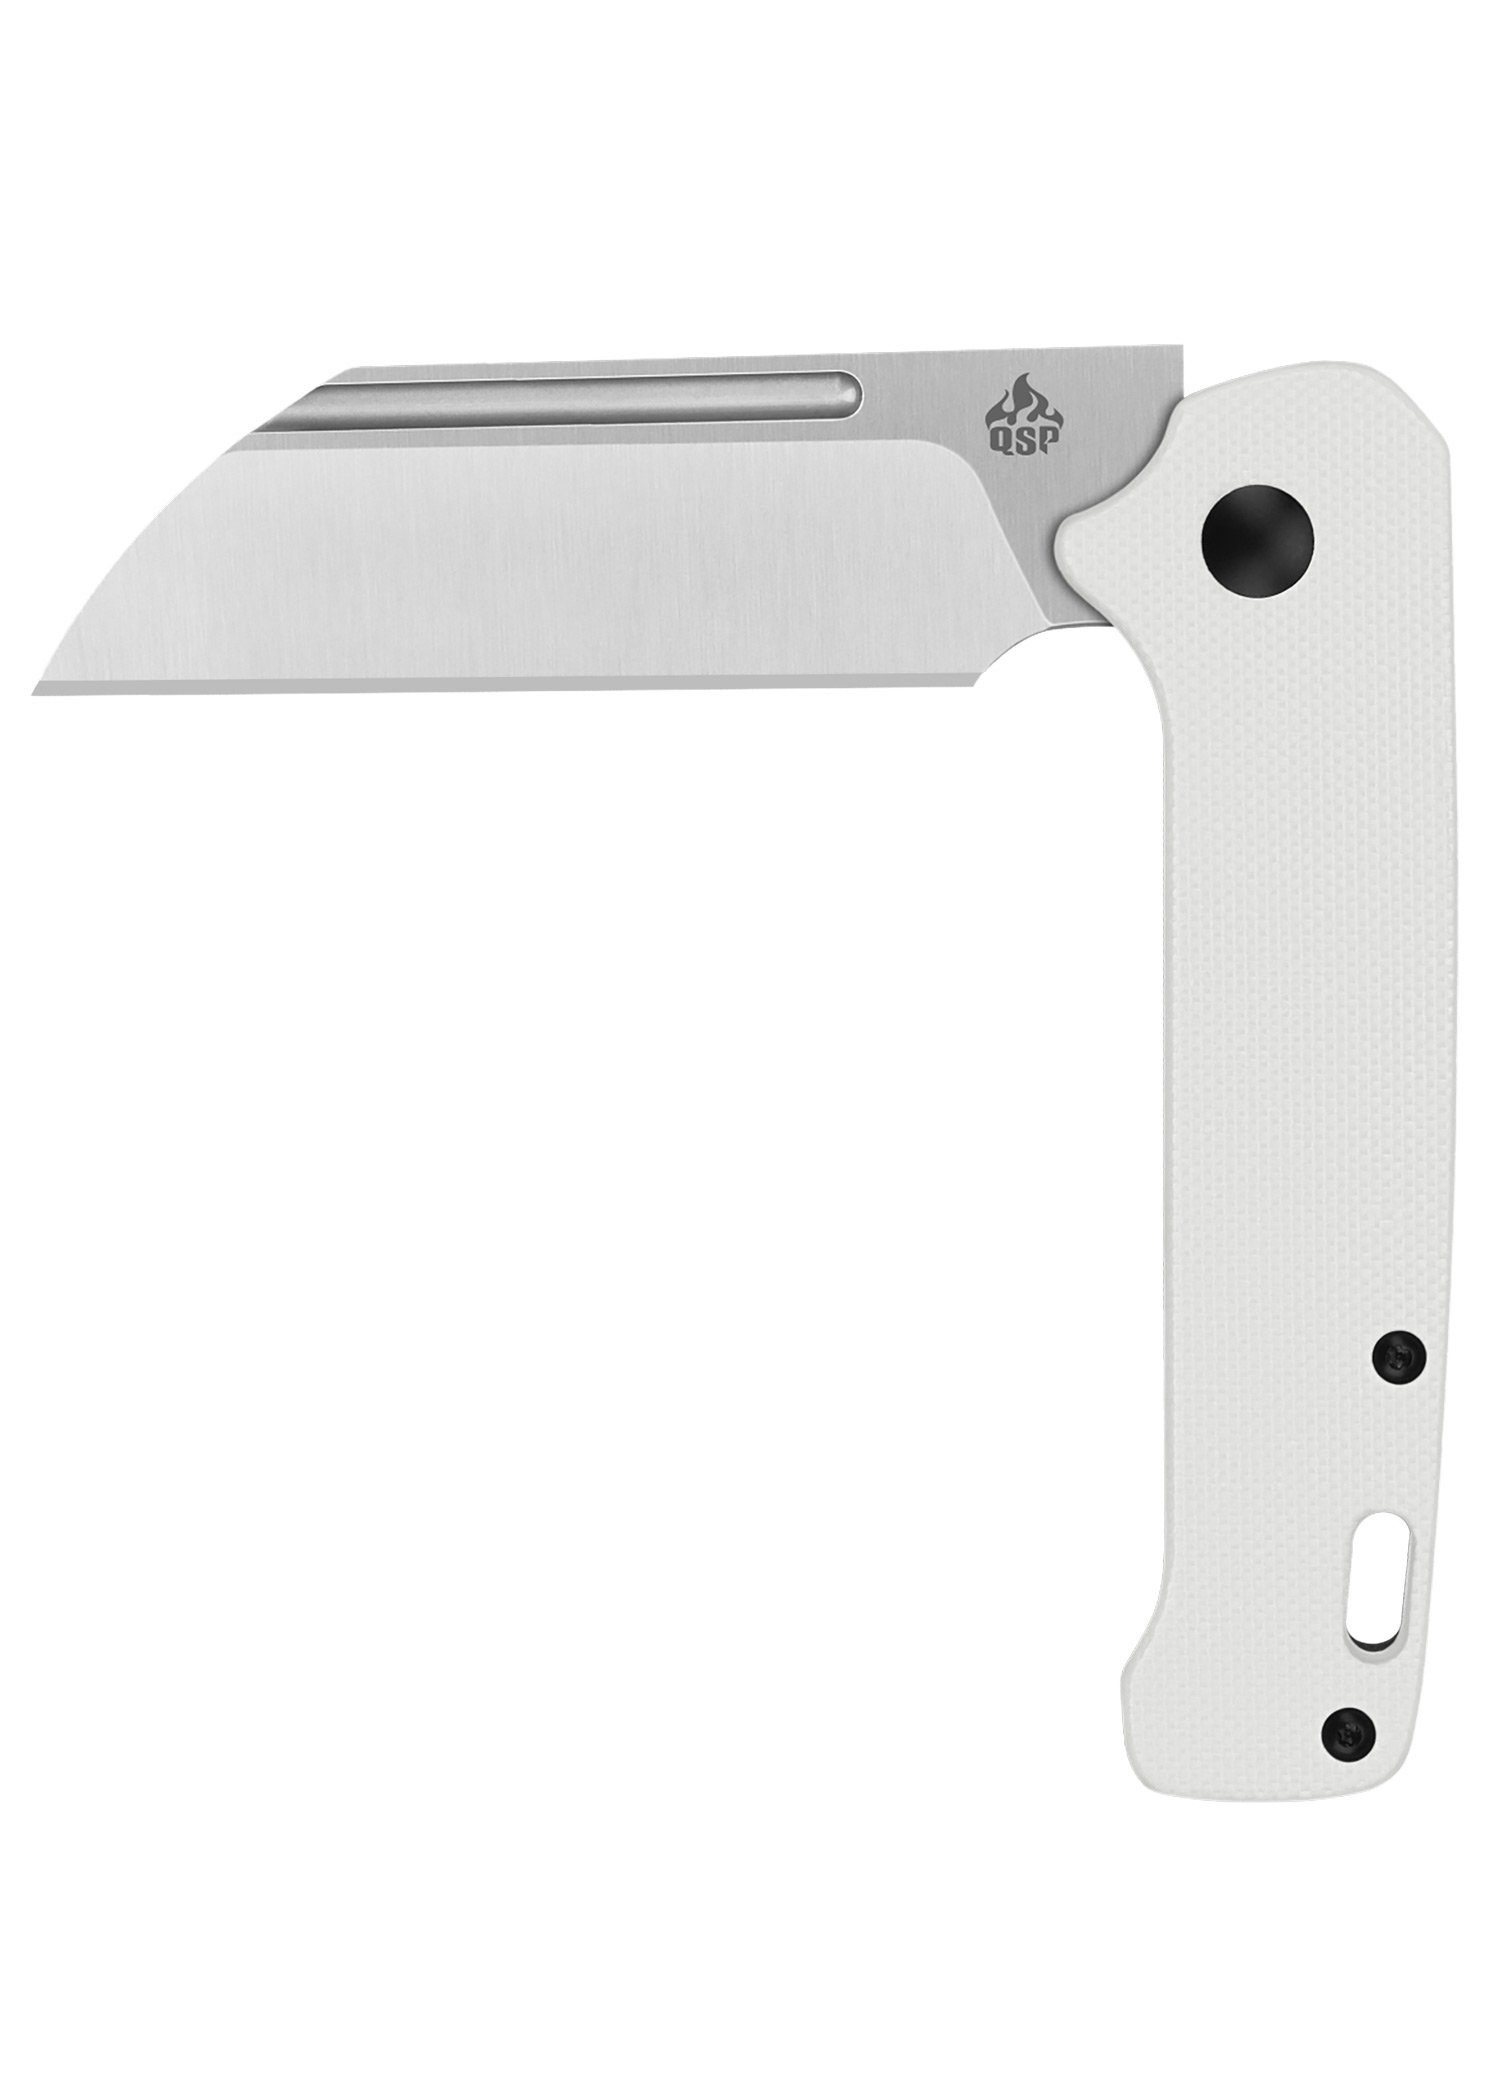 G10-Griff QSP mit Penguin weißem QSP Taschenmesser Slip-Joint